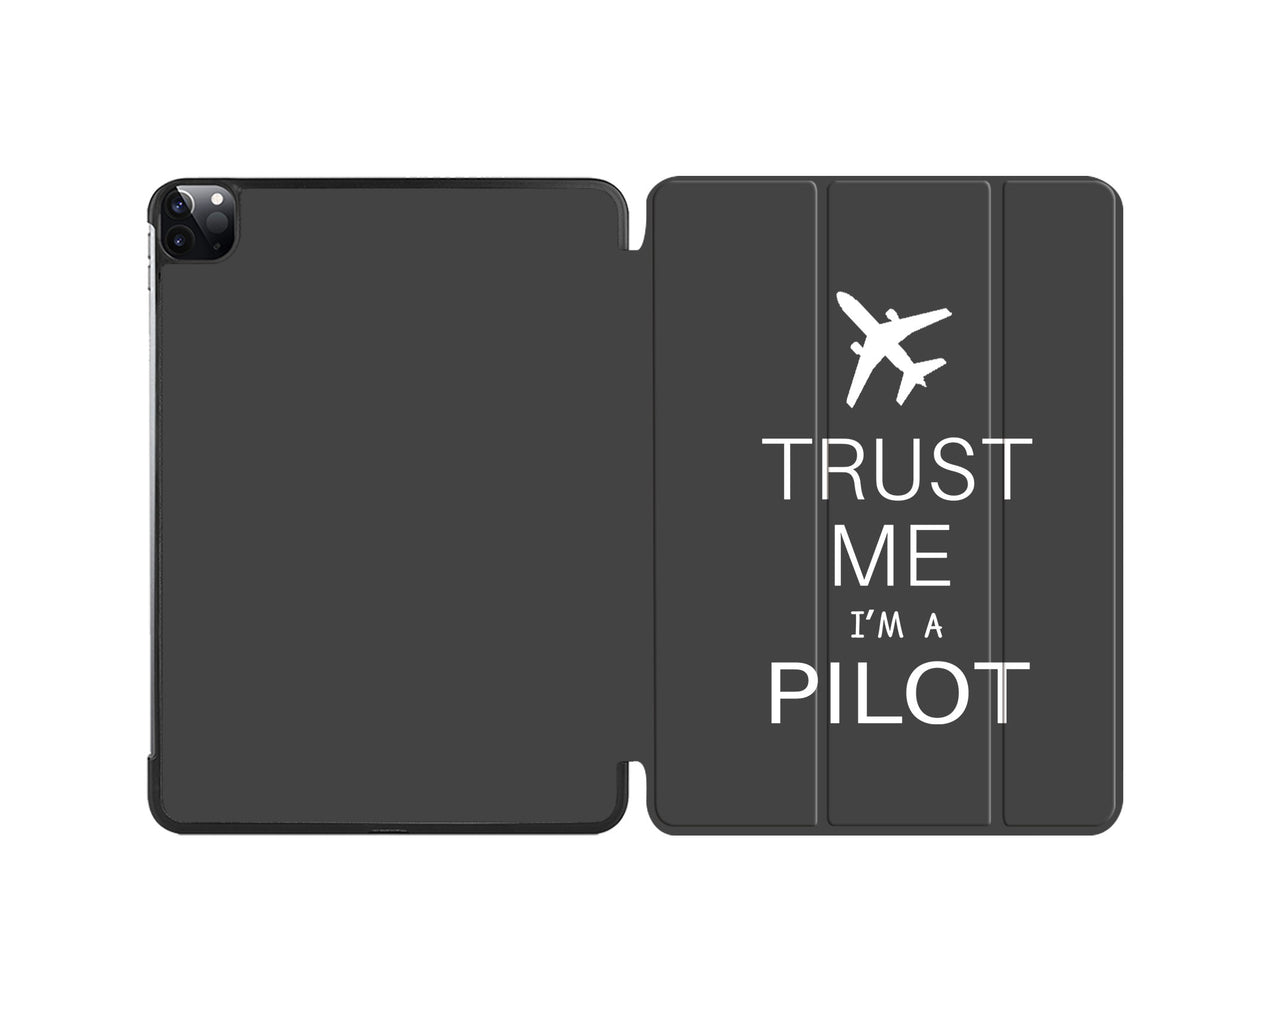 Trust Me I'm a Pilot 2 Designed iPad Cases